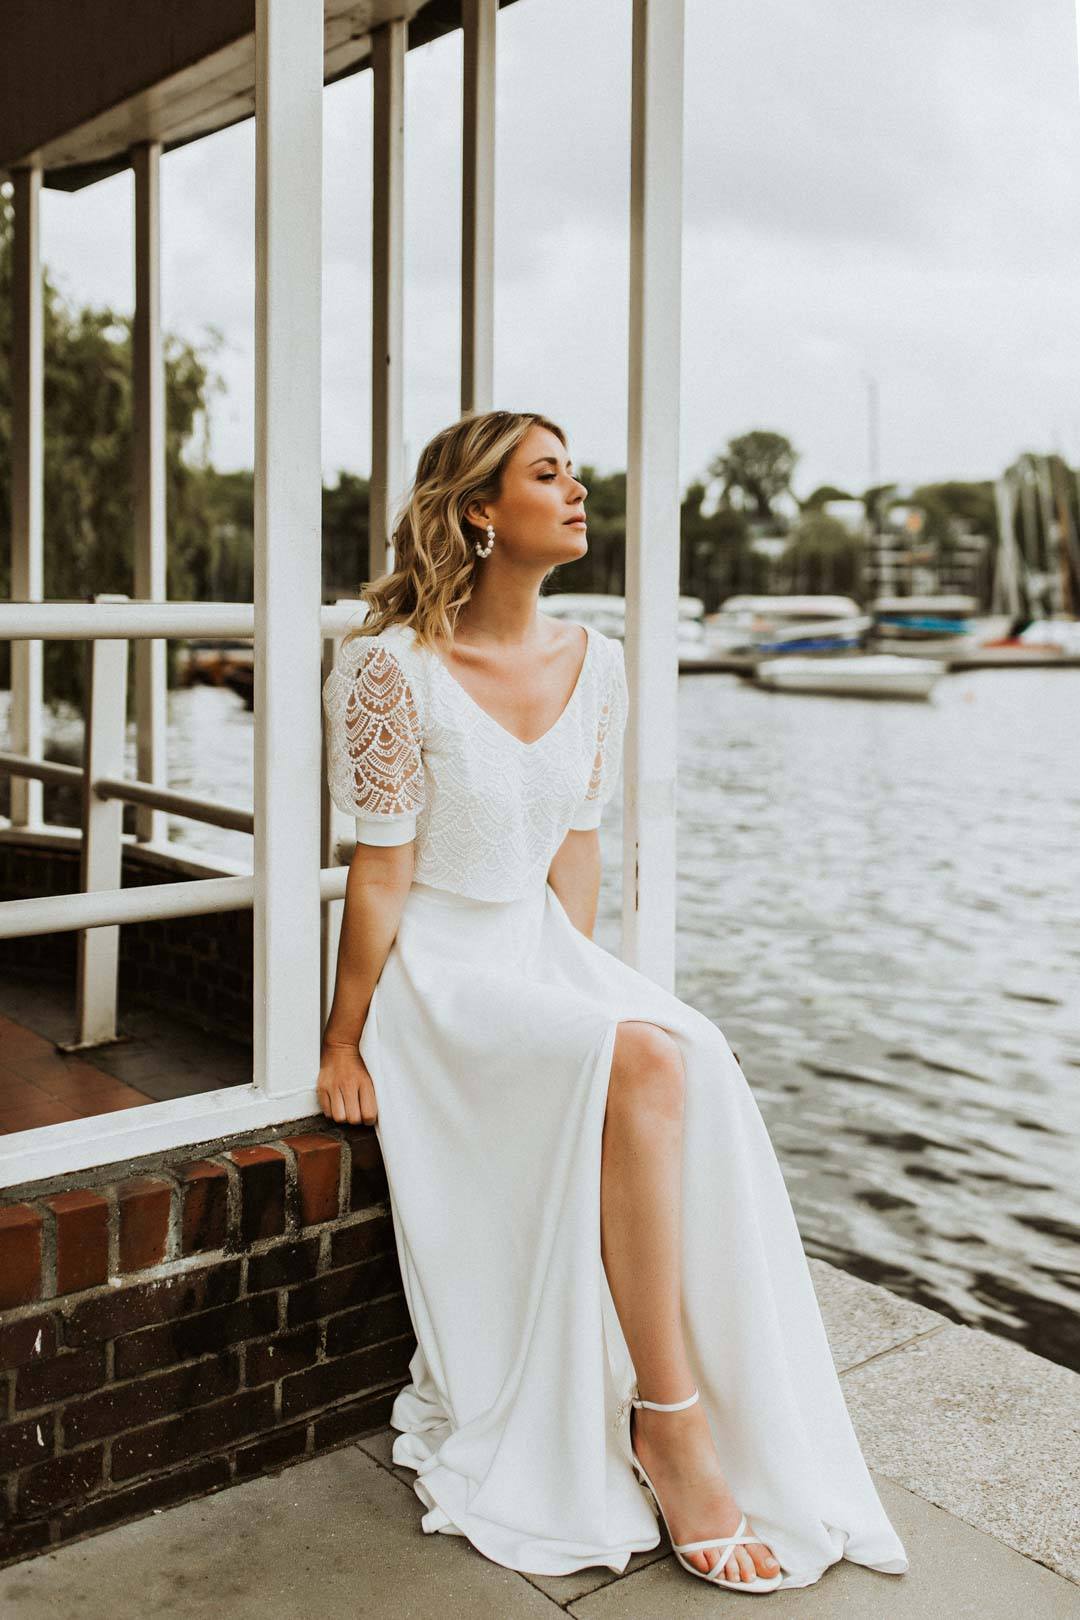 Lace Wedding Dresses: 36 Looks + Expert Tips  Hochzeit kleidung, Kleider  hochzeit, Hochzeitskleid